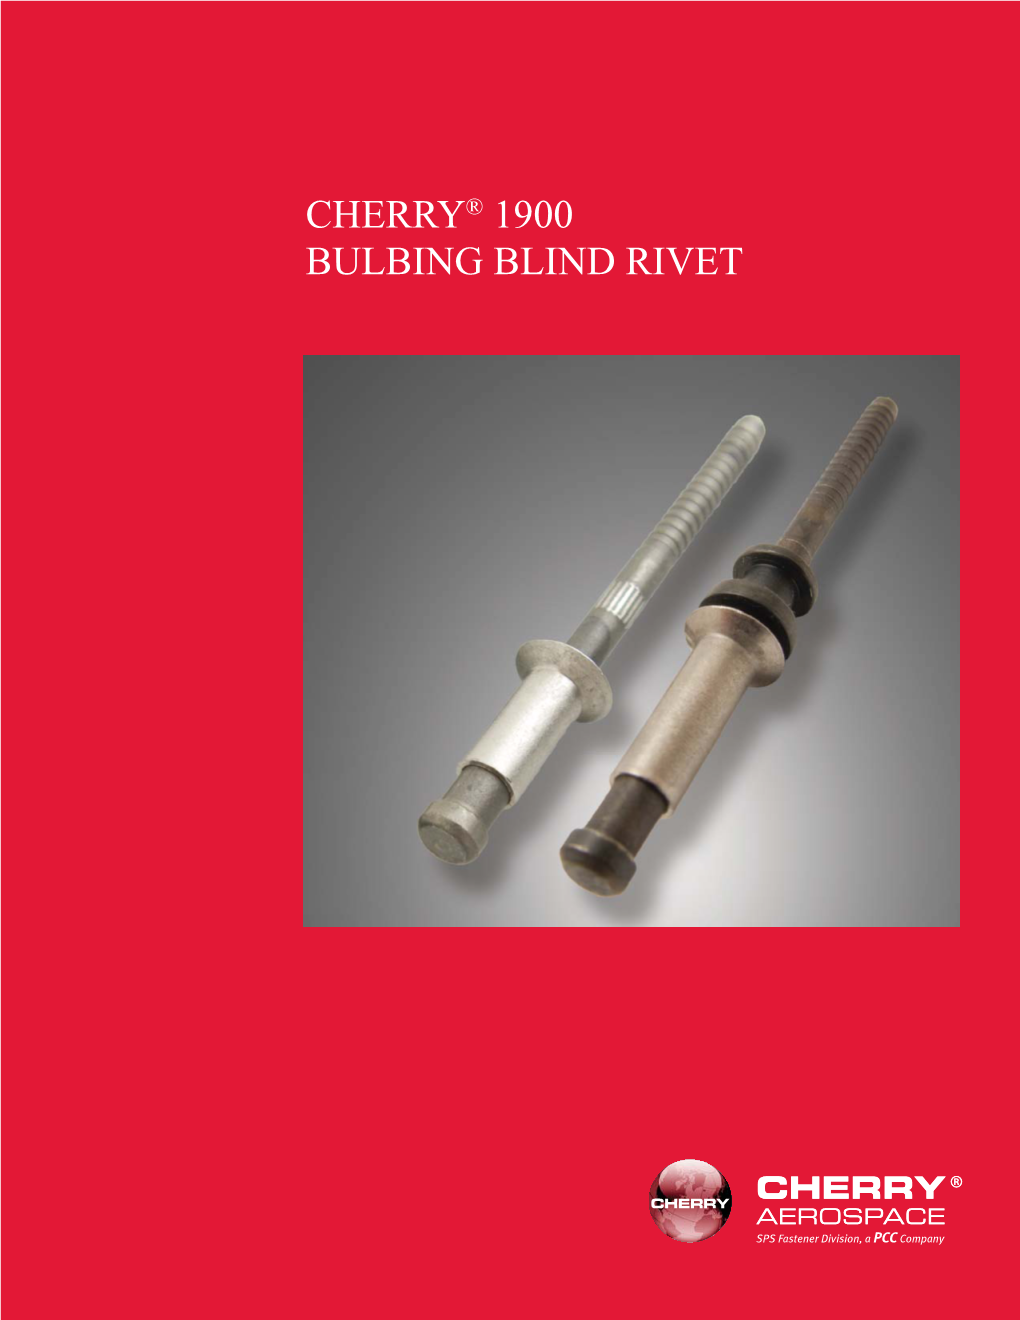 Cherry® 1900 Bulbing Blind Rivet